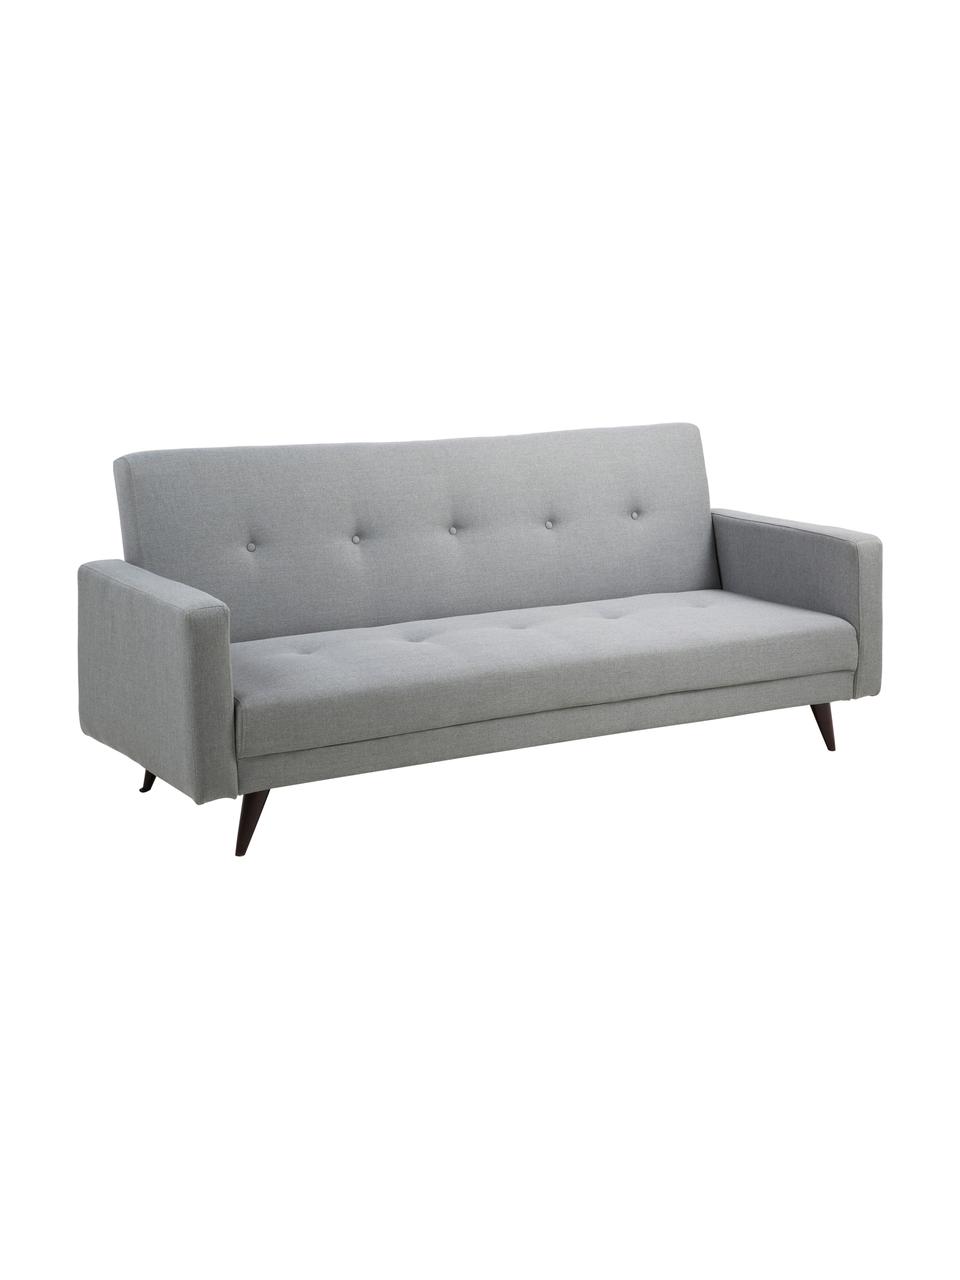 Sofa rozkładana Leconi (3-osobowa), Tapicerka: poliester, Nogi: drewno kauczukowe, lakier, Jasny szary, S 217 x G 89 cm